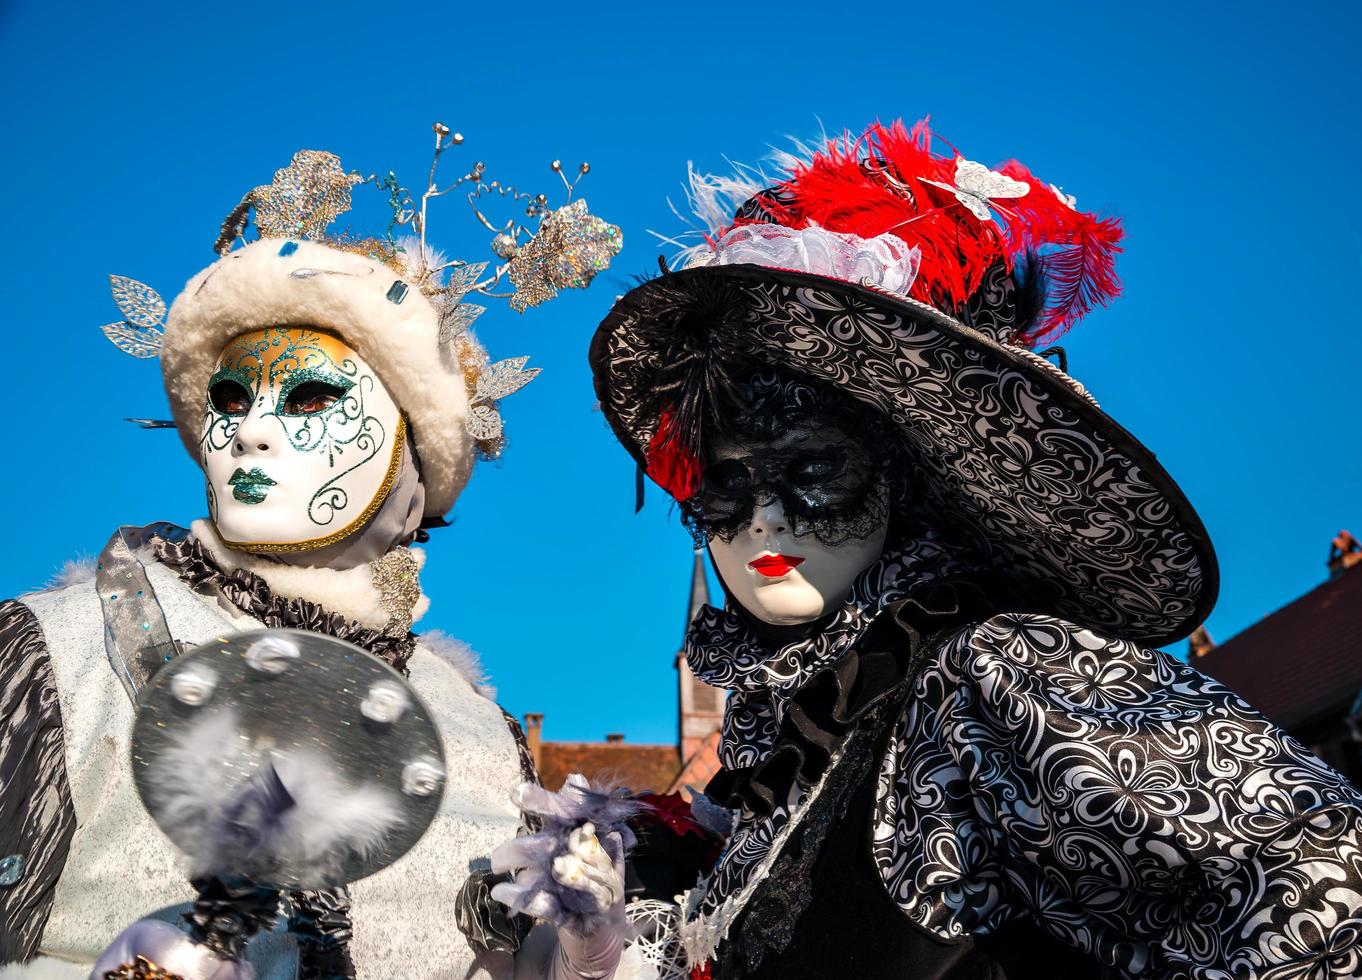 carnaval veneziano em rosheim, alsácia, frança. foto